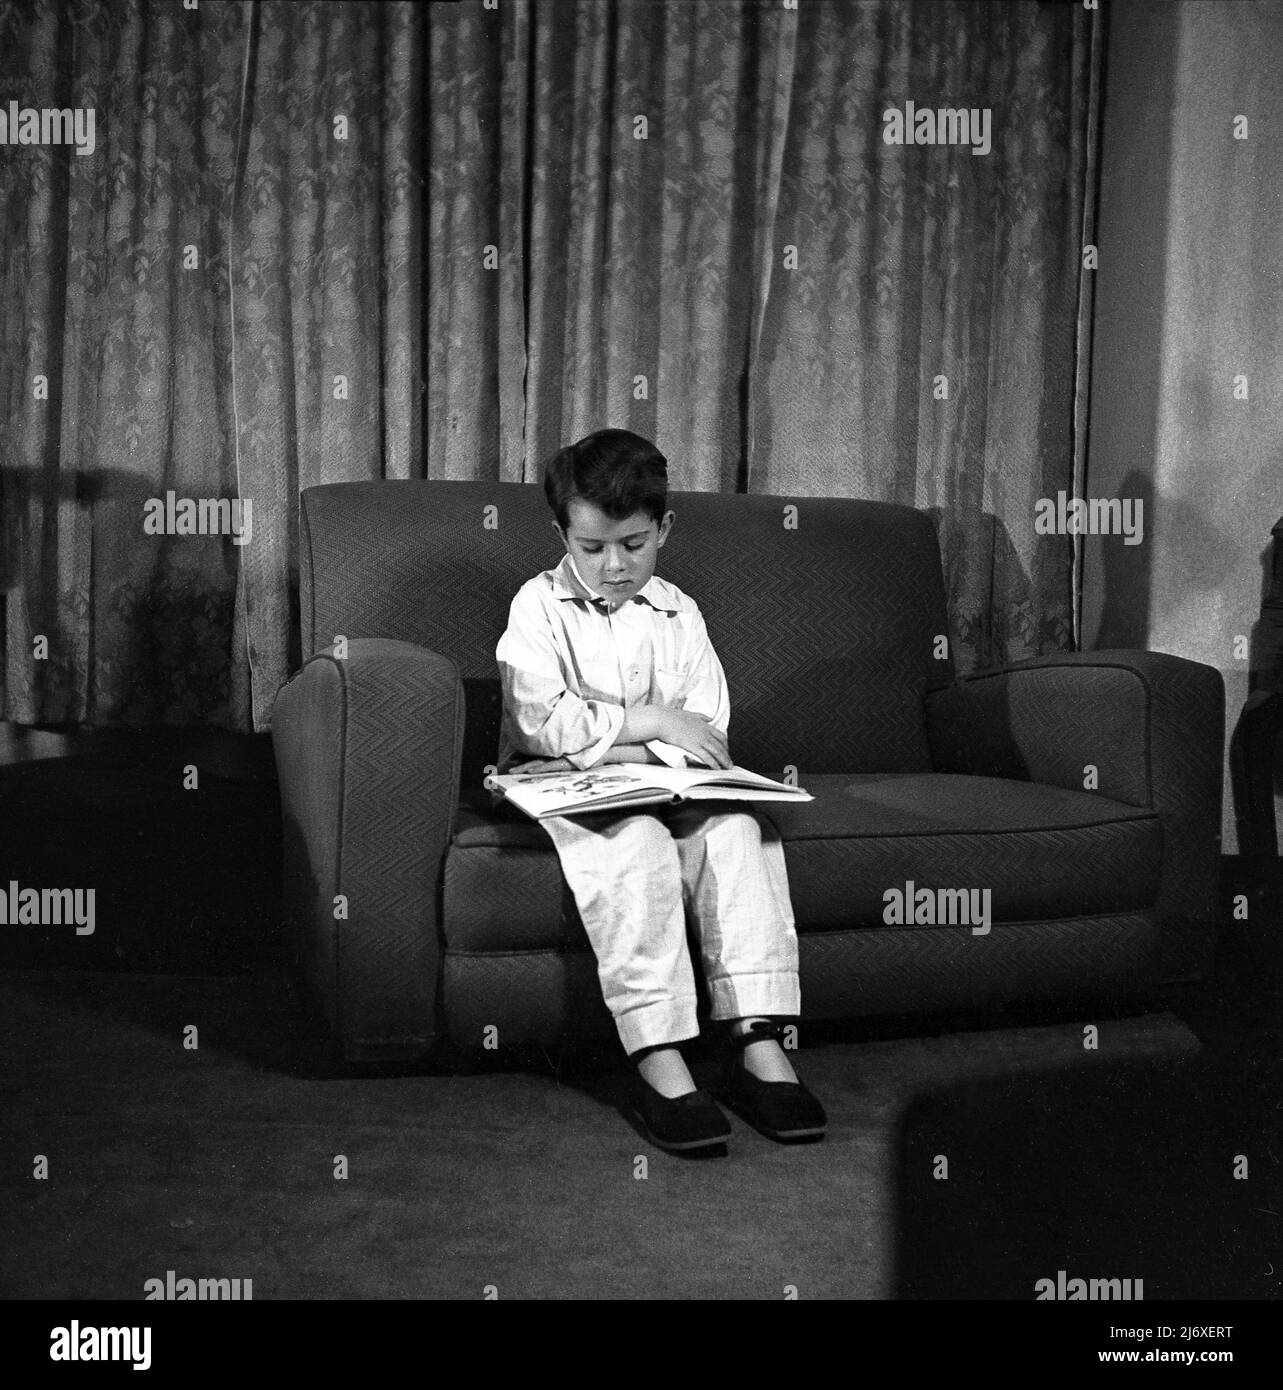 1950s, storico, giovane ragazzo nei suoi pigiami e pantofole seduti su un piccolo divano guardando un libro di foto prima di andare a dormire, Inghilterra, Regno Unito. Foto Stock